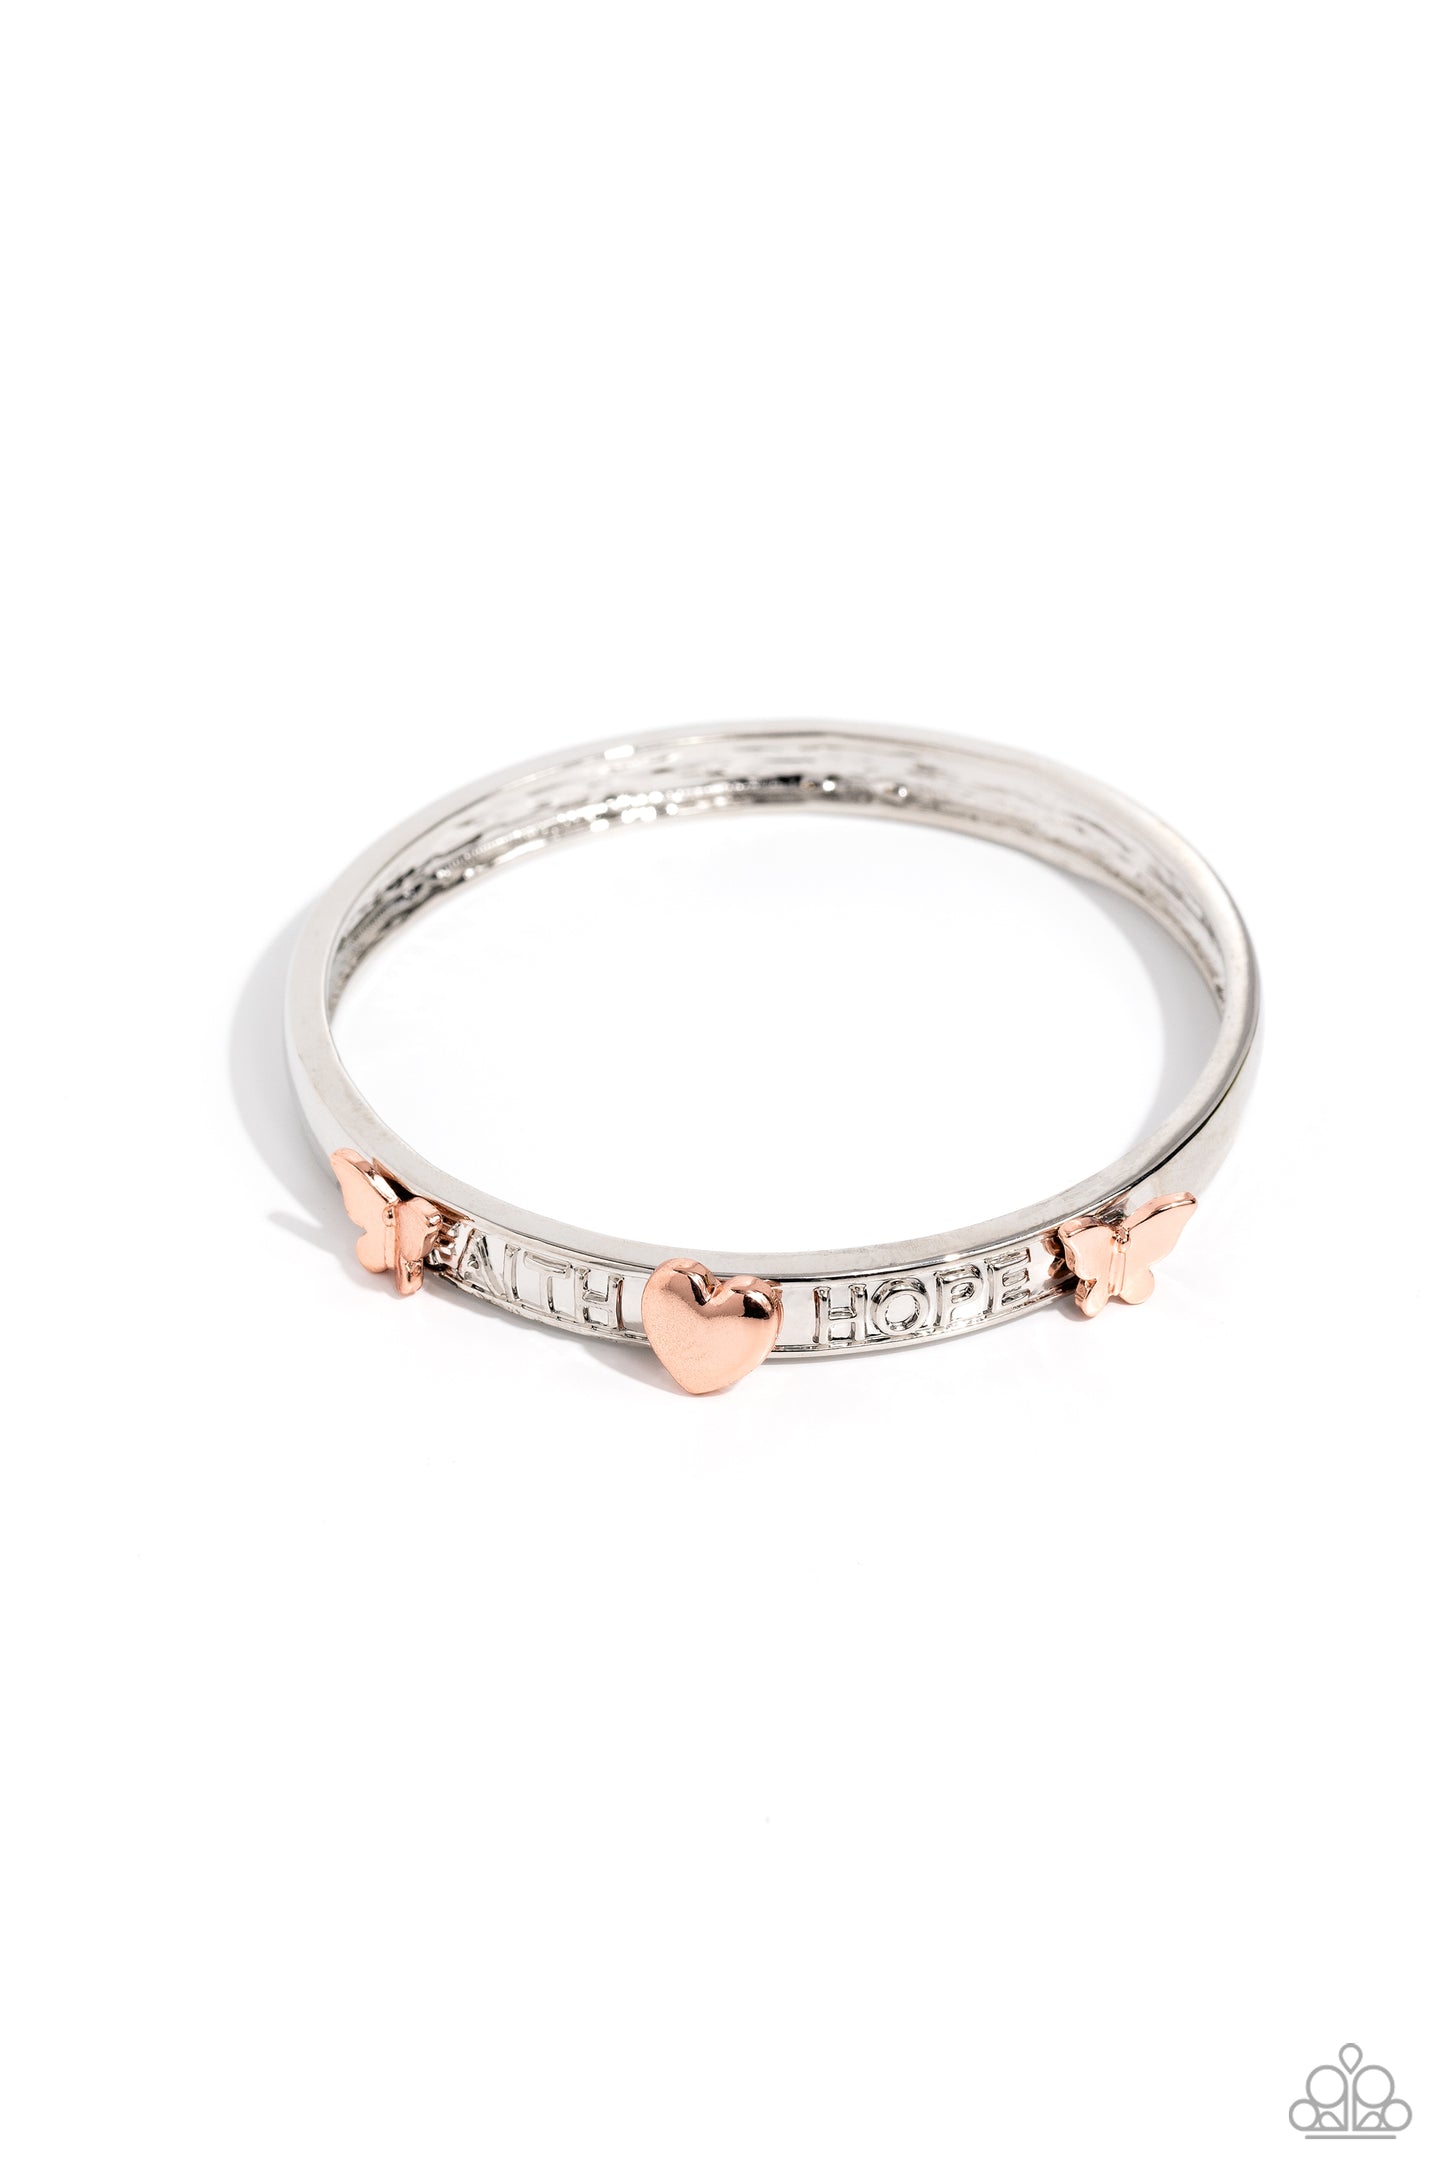 Faith, Trust, and Pixie Dust - Silver & Copper Bangle Bracelet